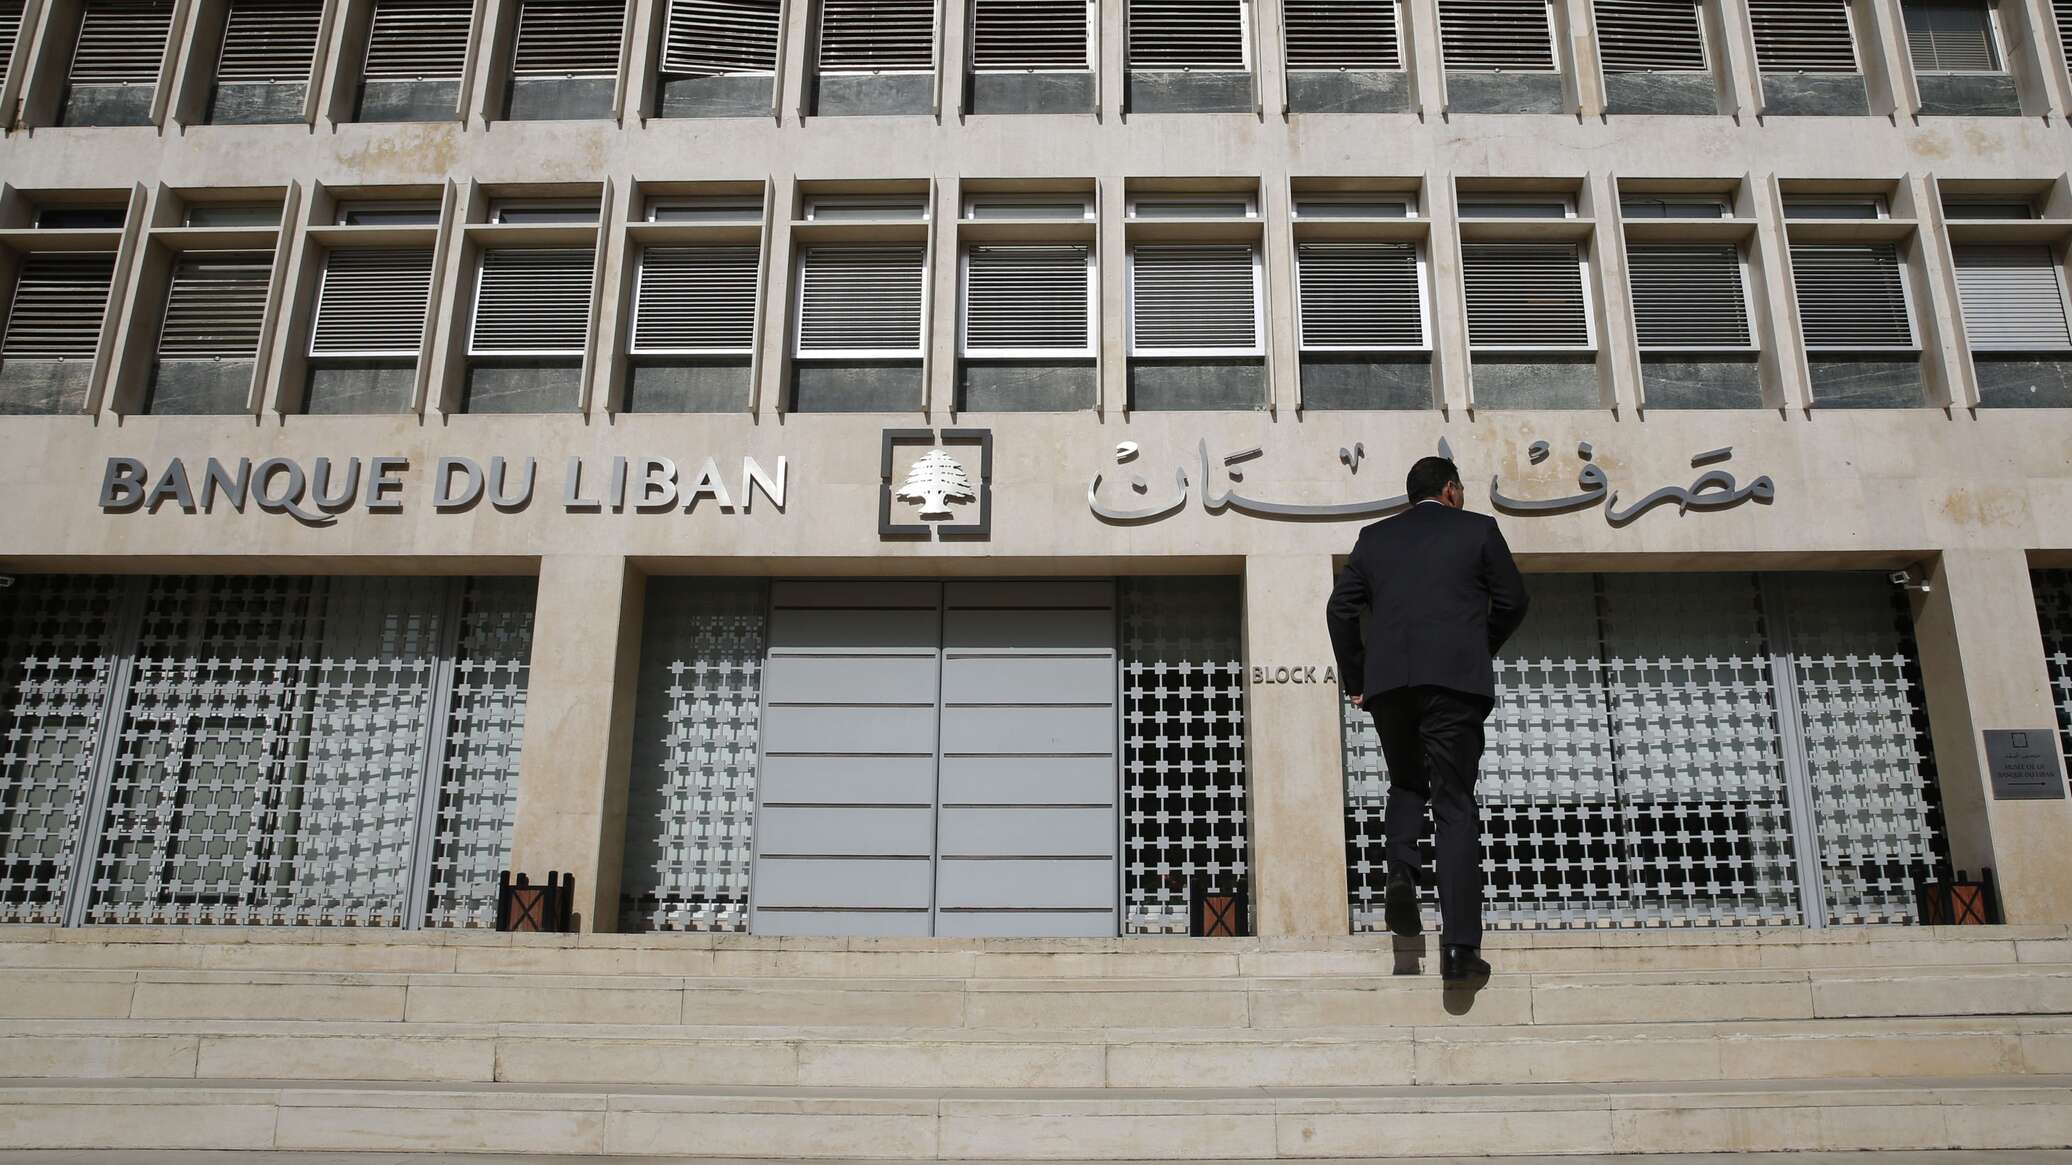 حاكم مصرف لبنان: أموال المودعين ليست موجودة ولا يمكن إعادتها بالكامل